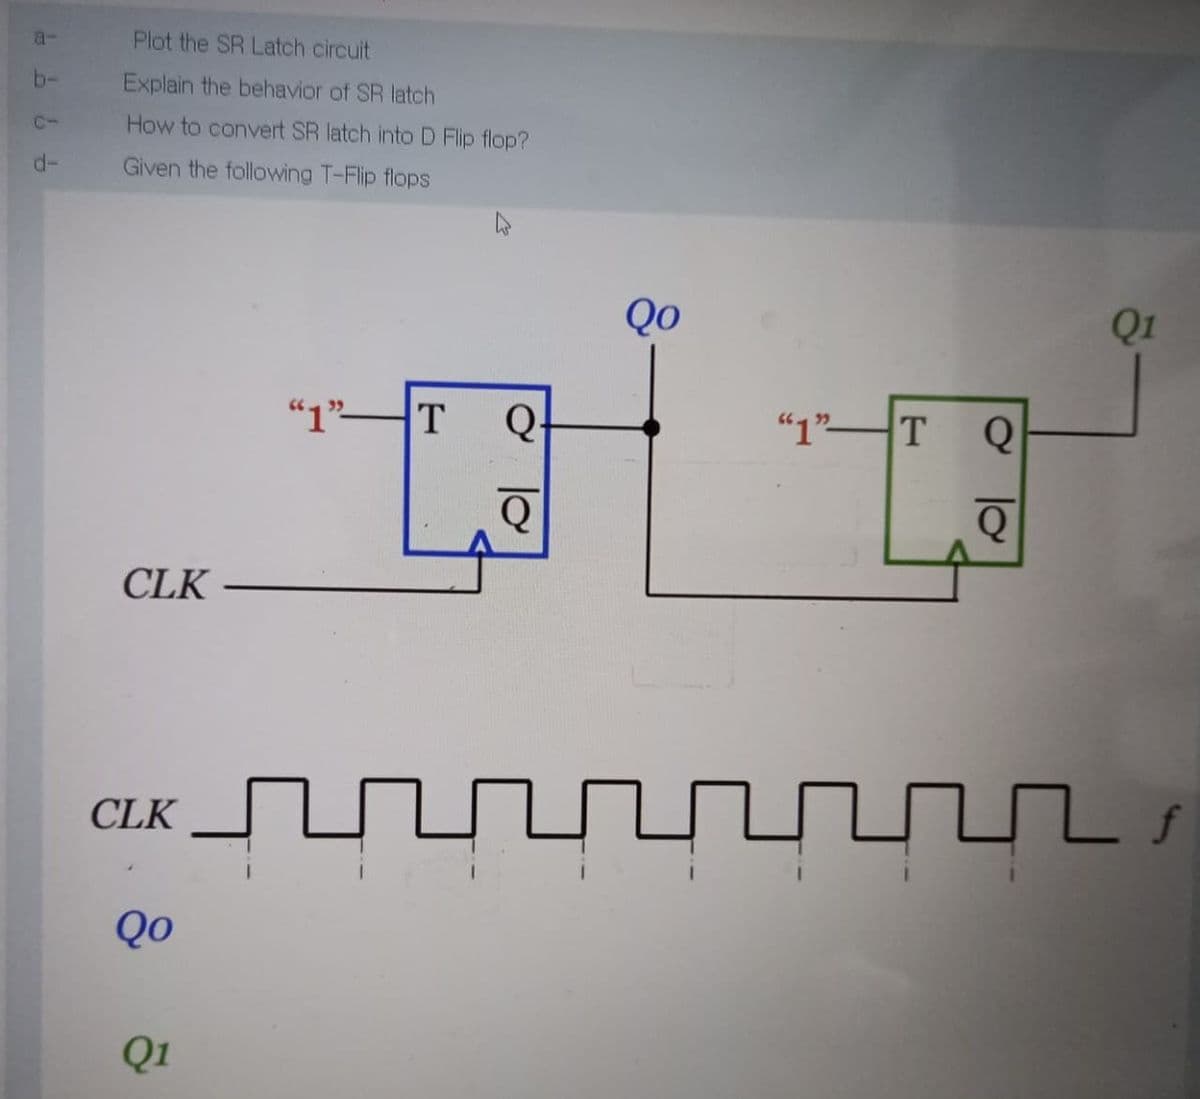 a-
Plot the SR Latch circuit
b-
Explain the behavior of SR latch
C-
How to convert SR latch into D Flip flop?
d-
Given the following T-Flip flops
Qo
Q1
"1"T
Q-
"1"T
CLK
CLK
Qo
Q1
